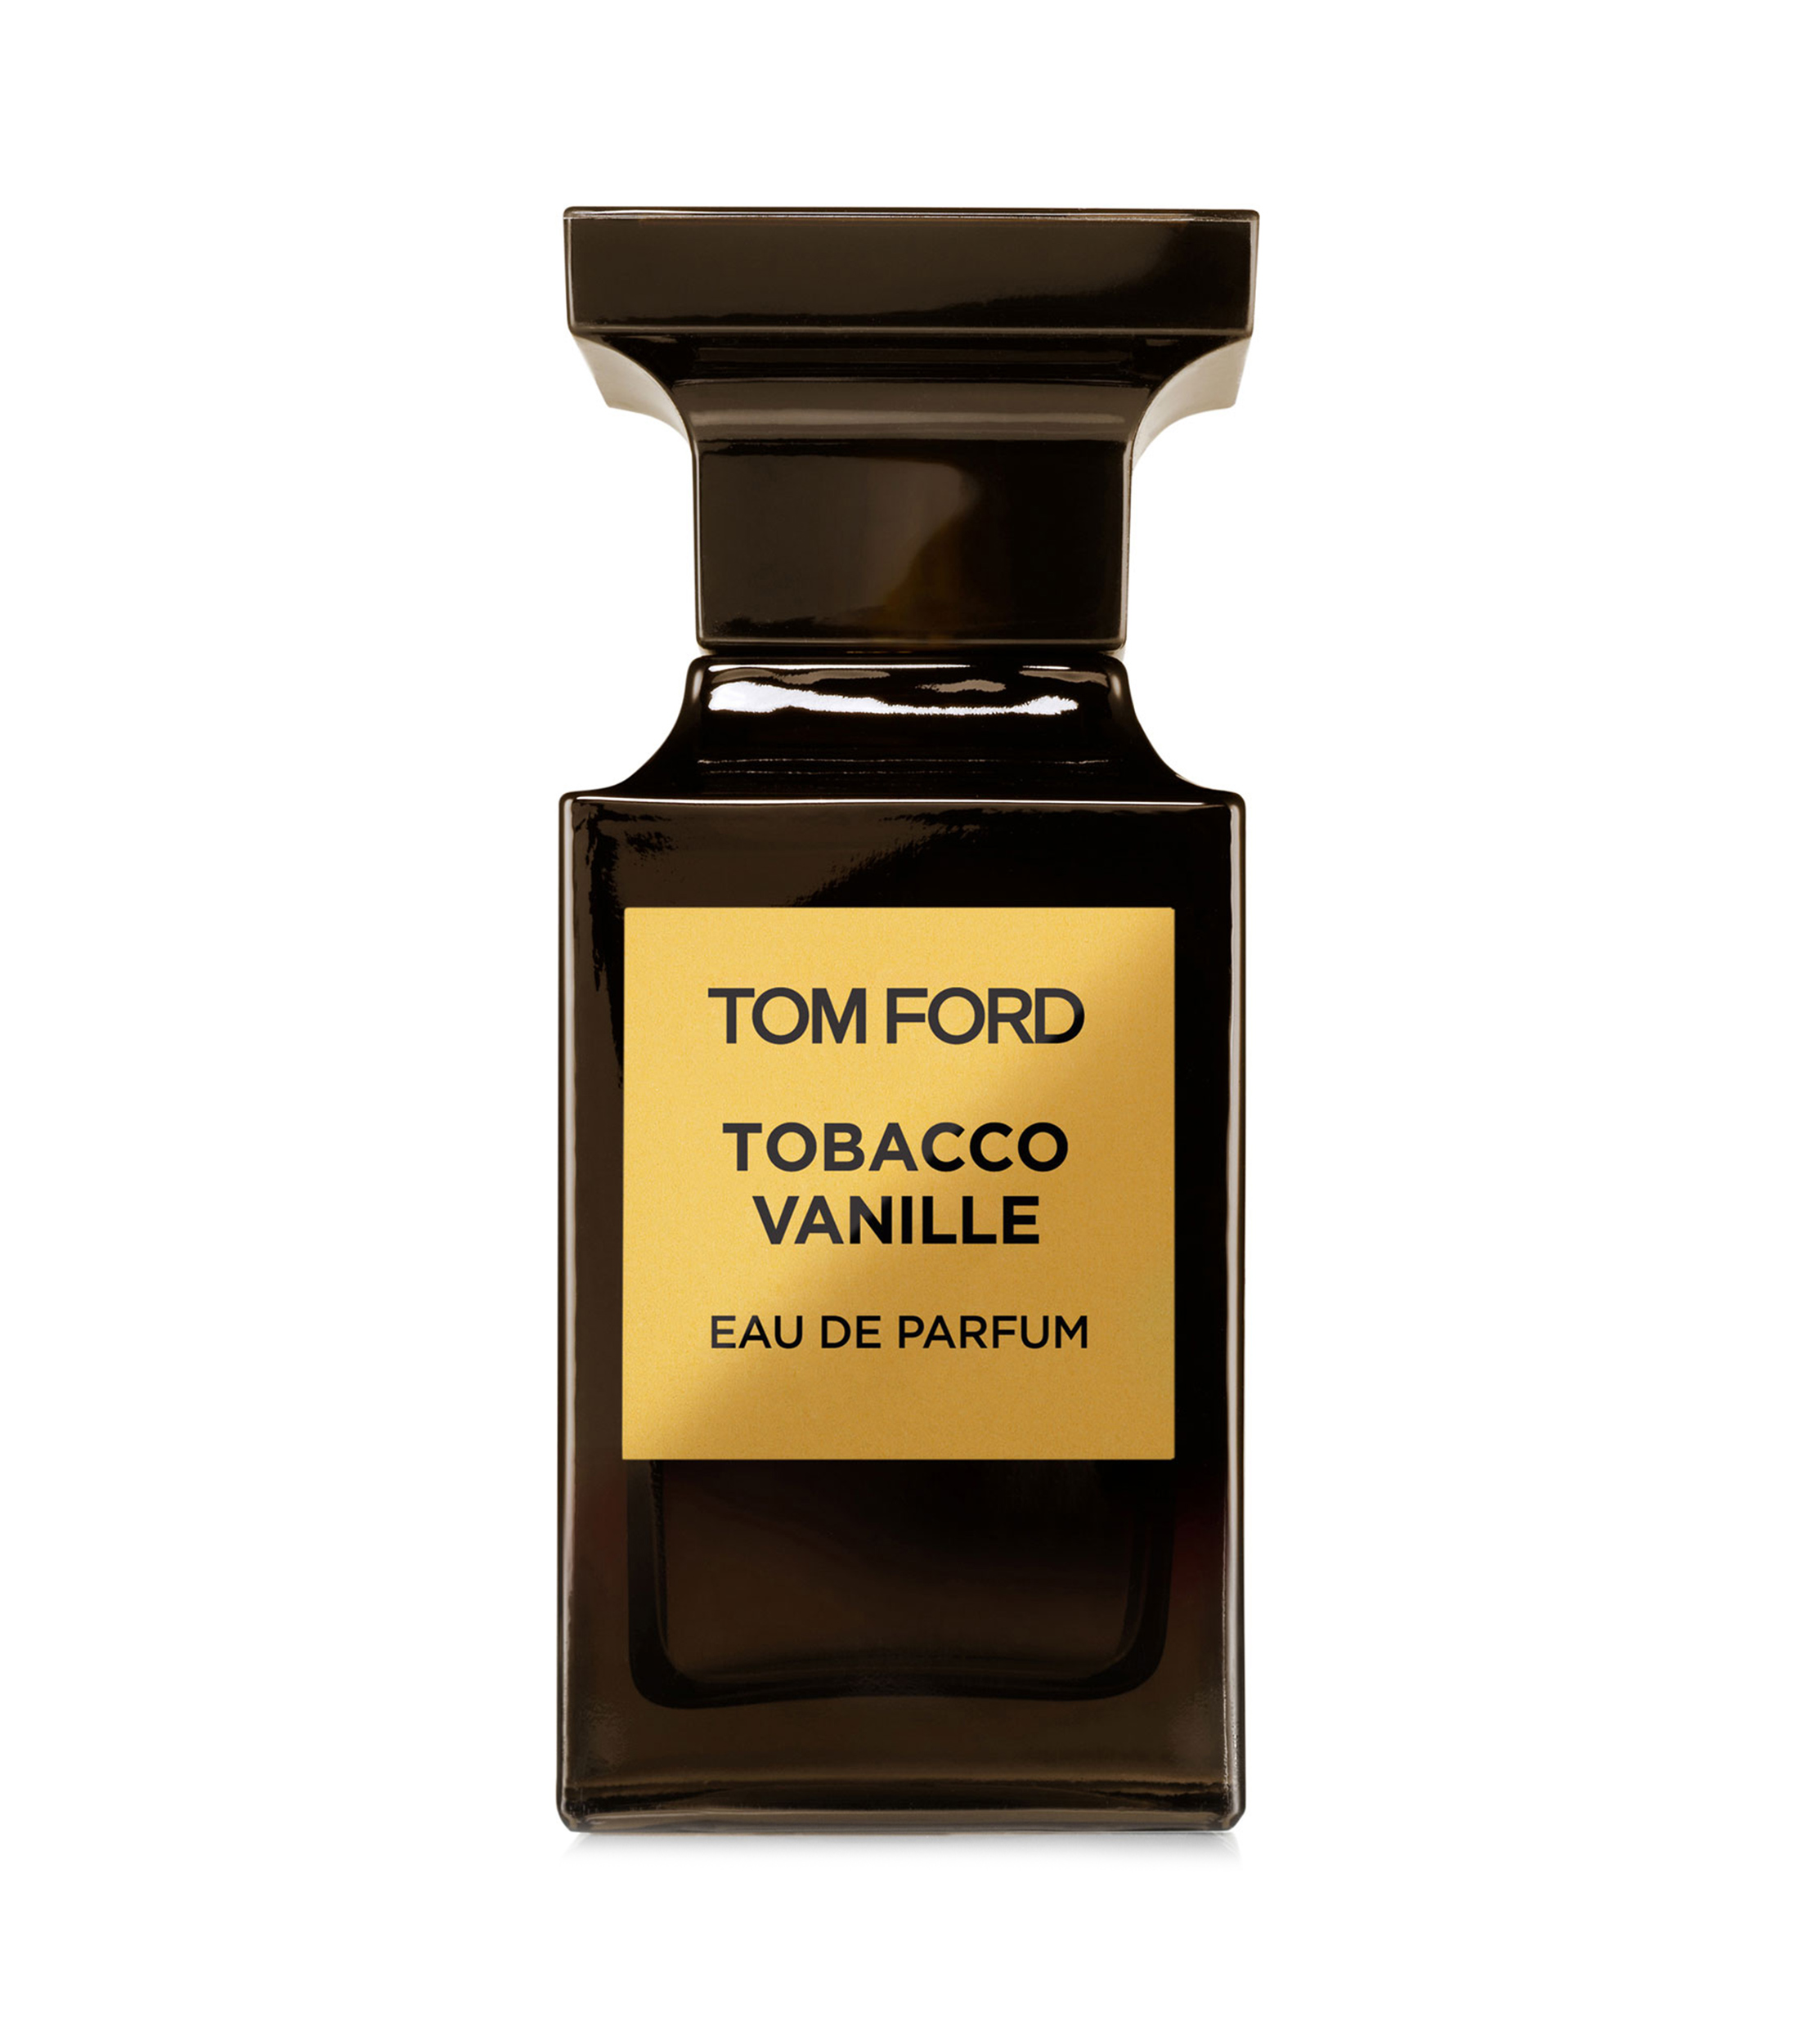 Tom Ford Perfume, Tobacco Vanille Eau de Parfum, 50 ml Unisex - El Palacio de Hierro